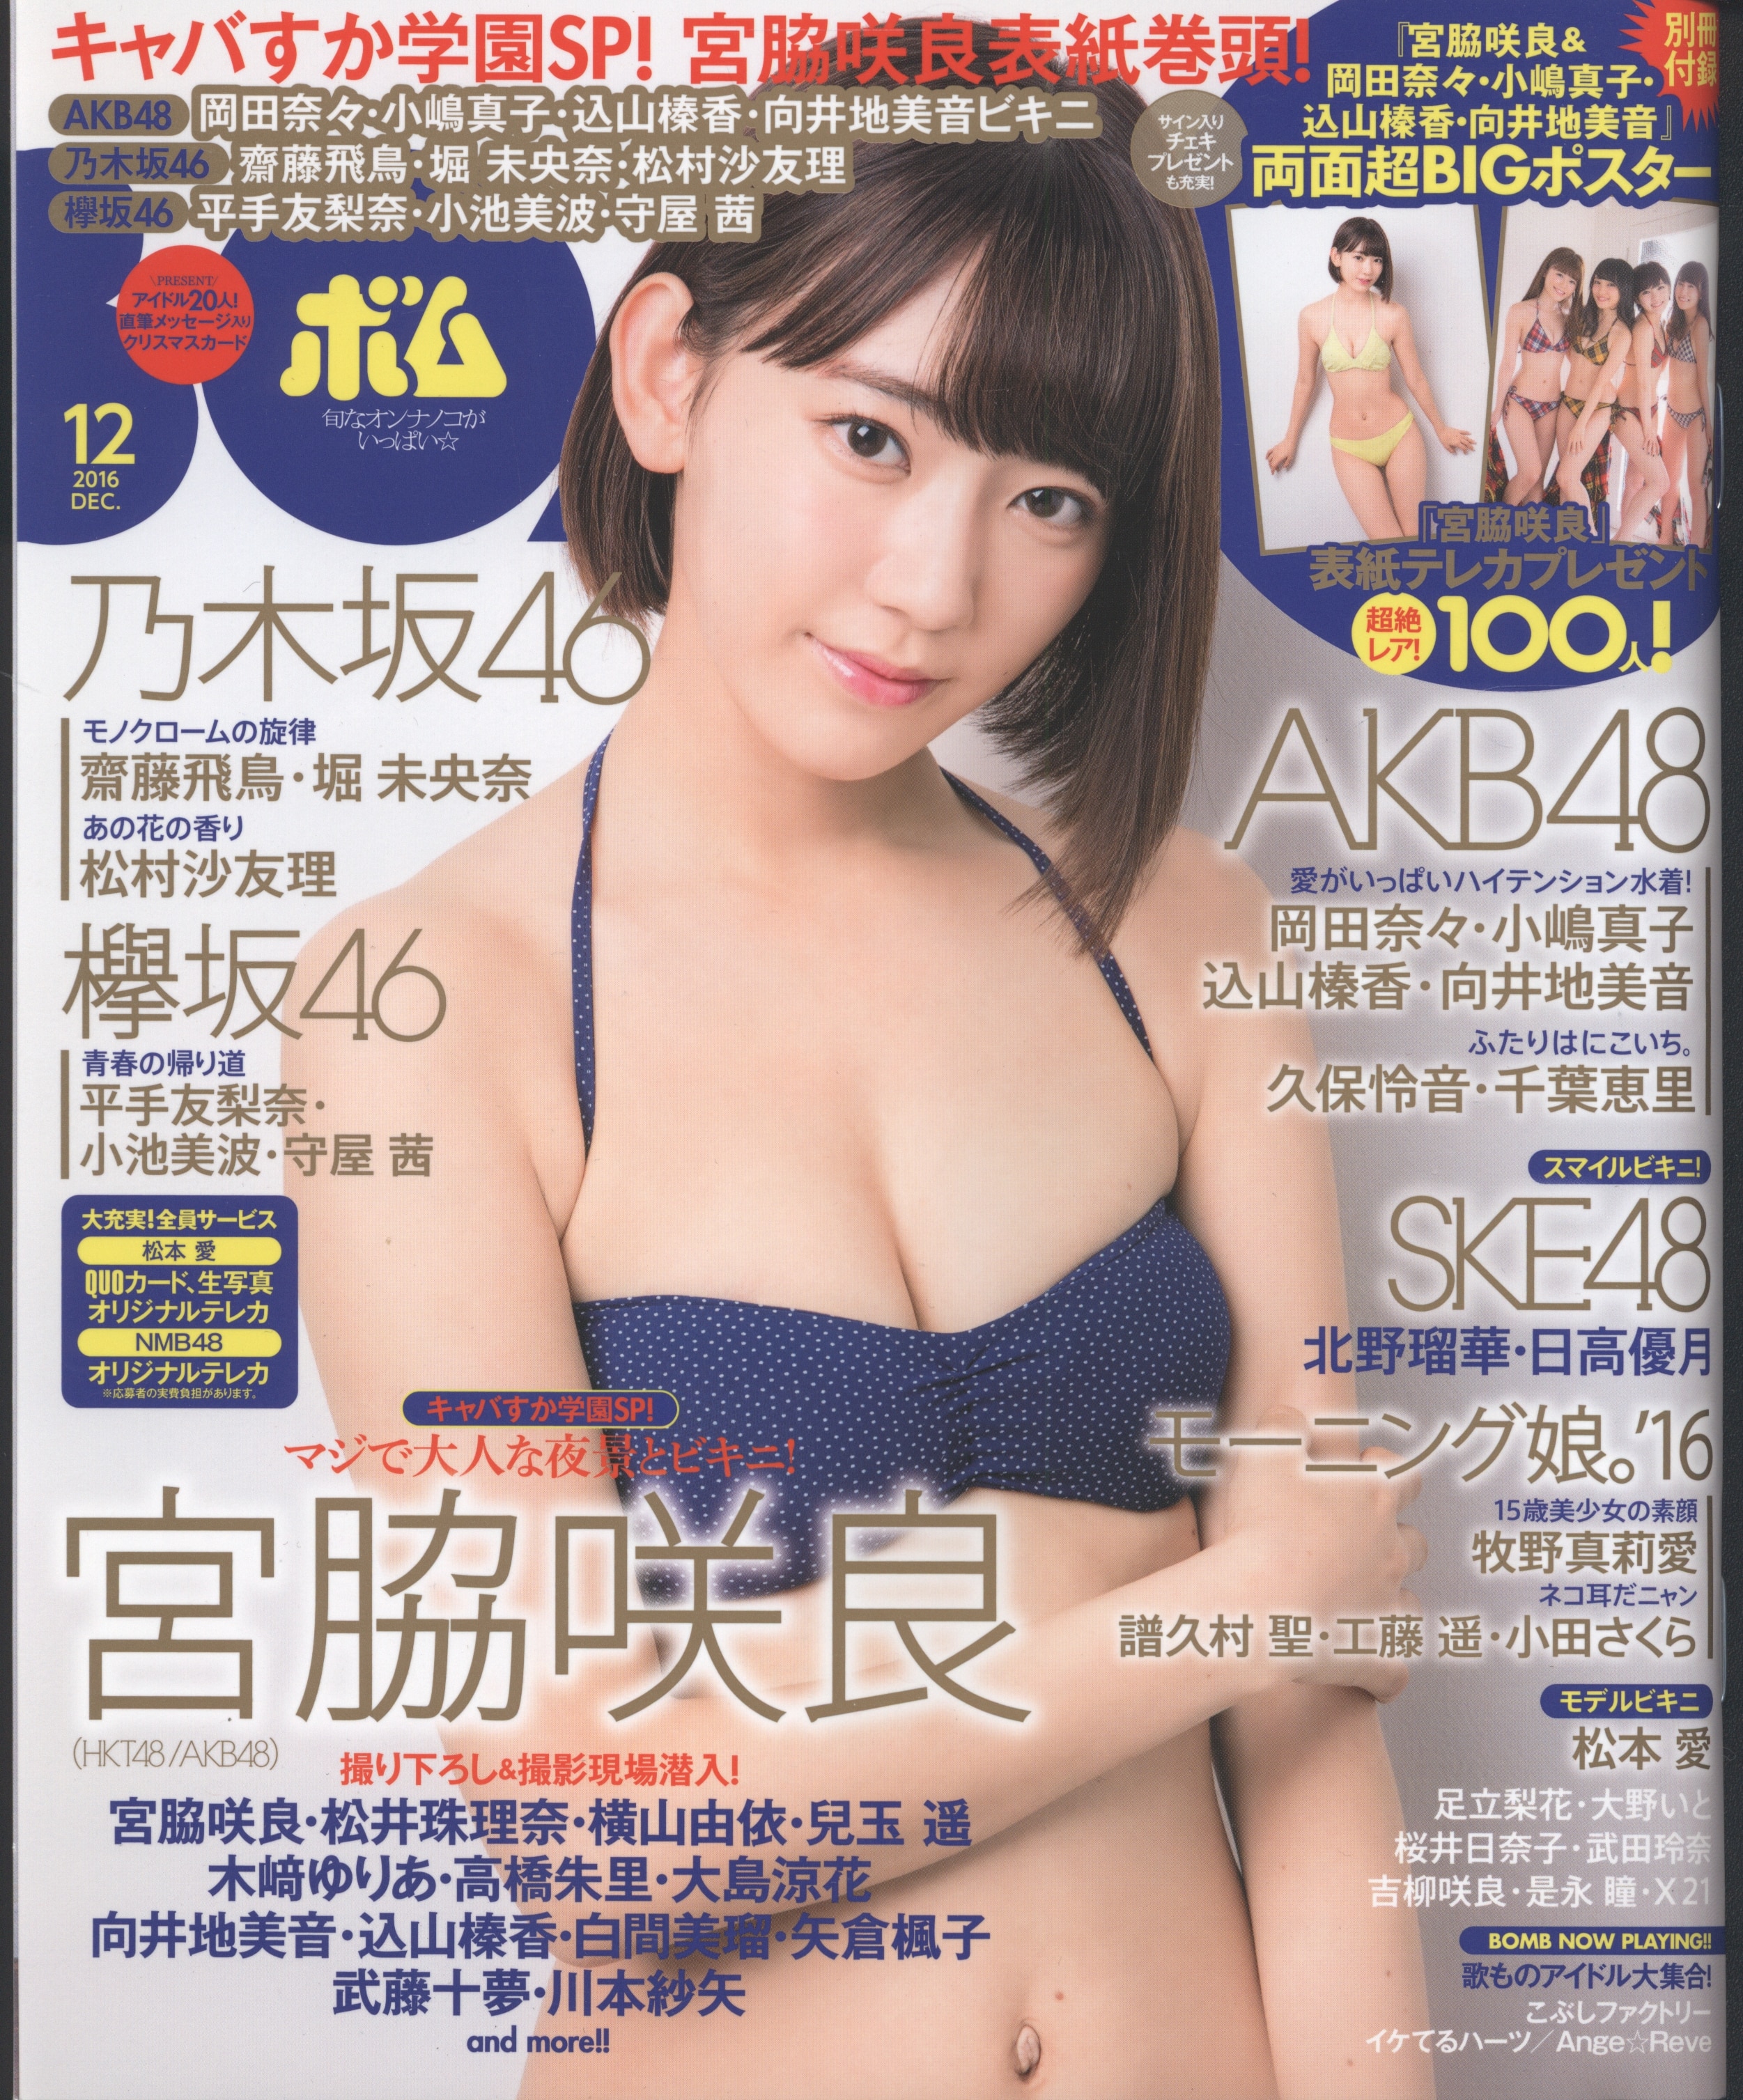 Gakken Plus HKT48 Miyawaki Sakura BOMB! December 2016 Edition 442 Mandarake Online Shop